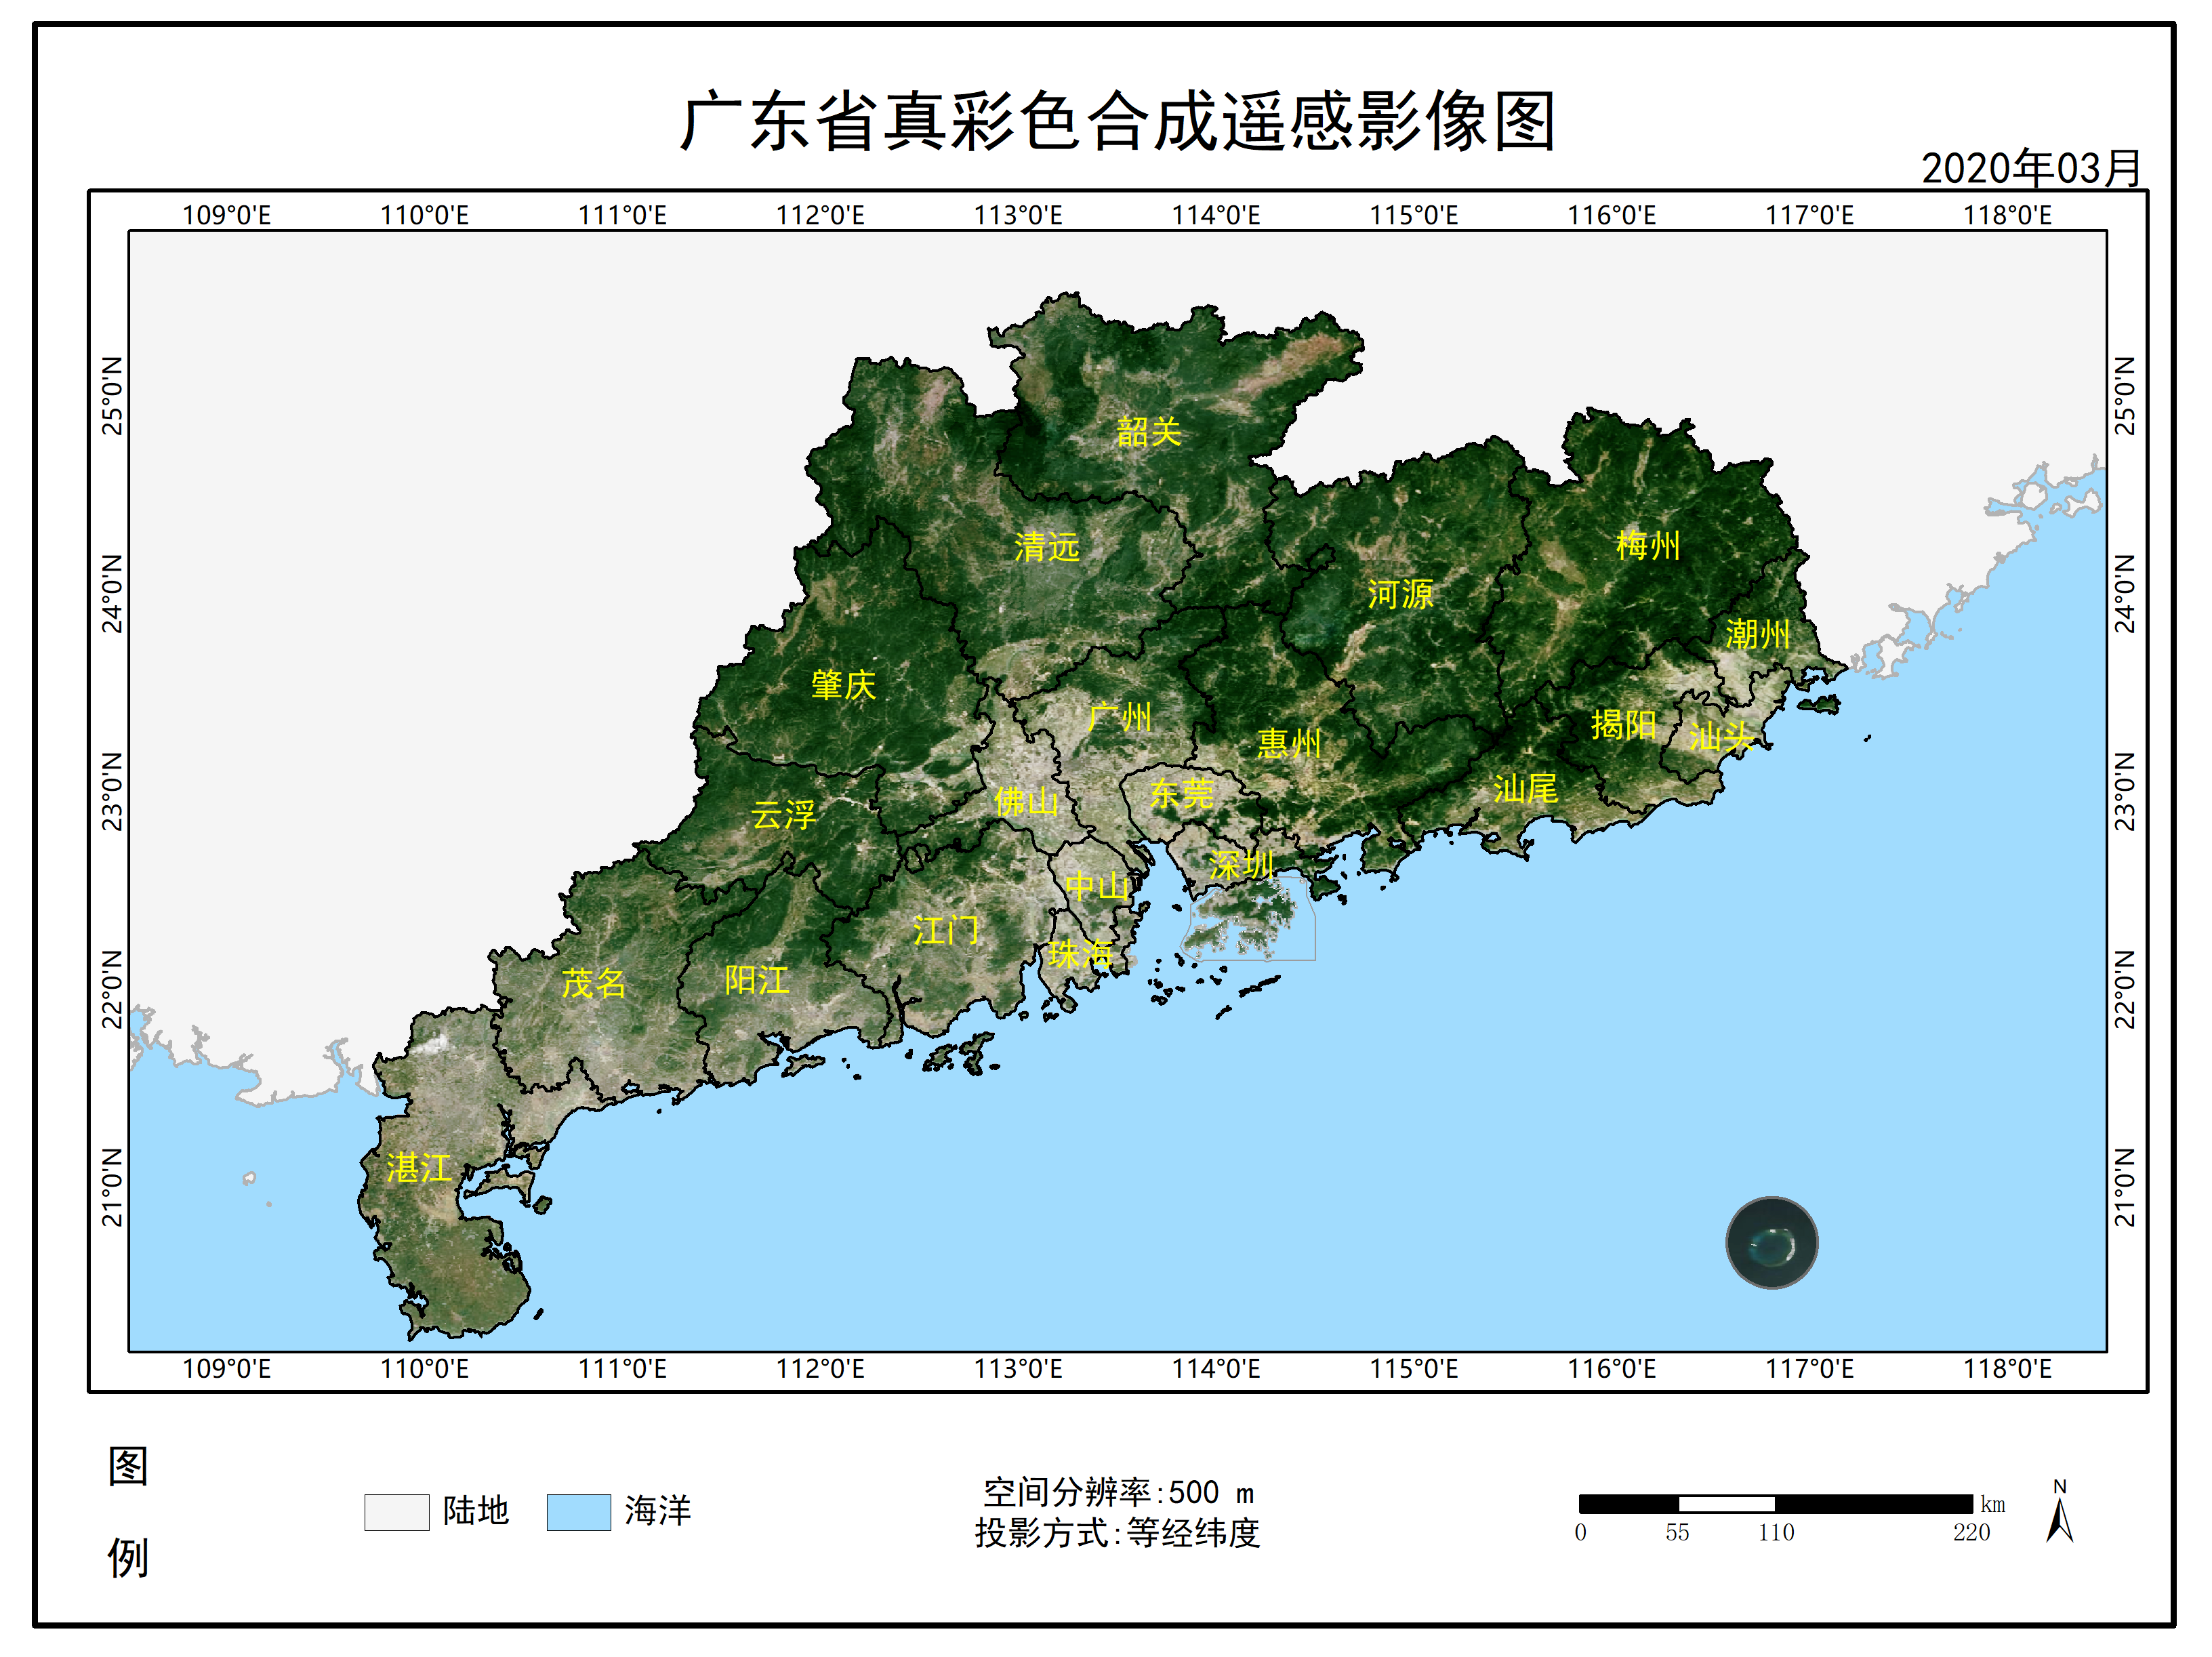 广东春耕卫星图,看看有啥新变化?